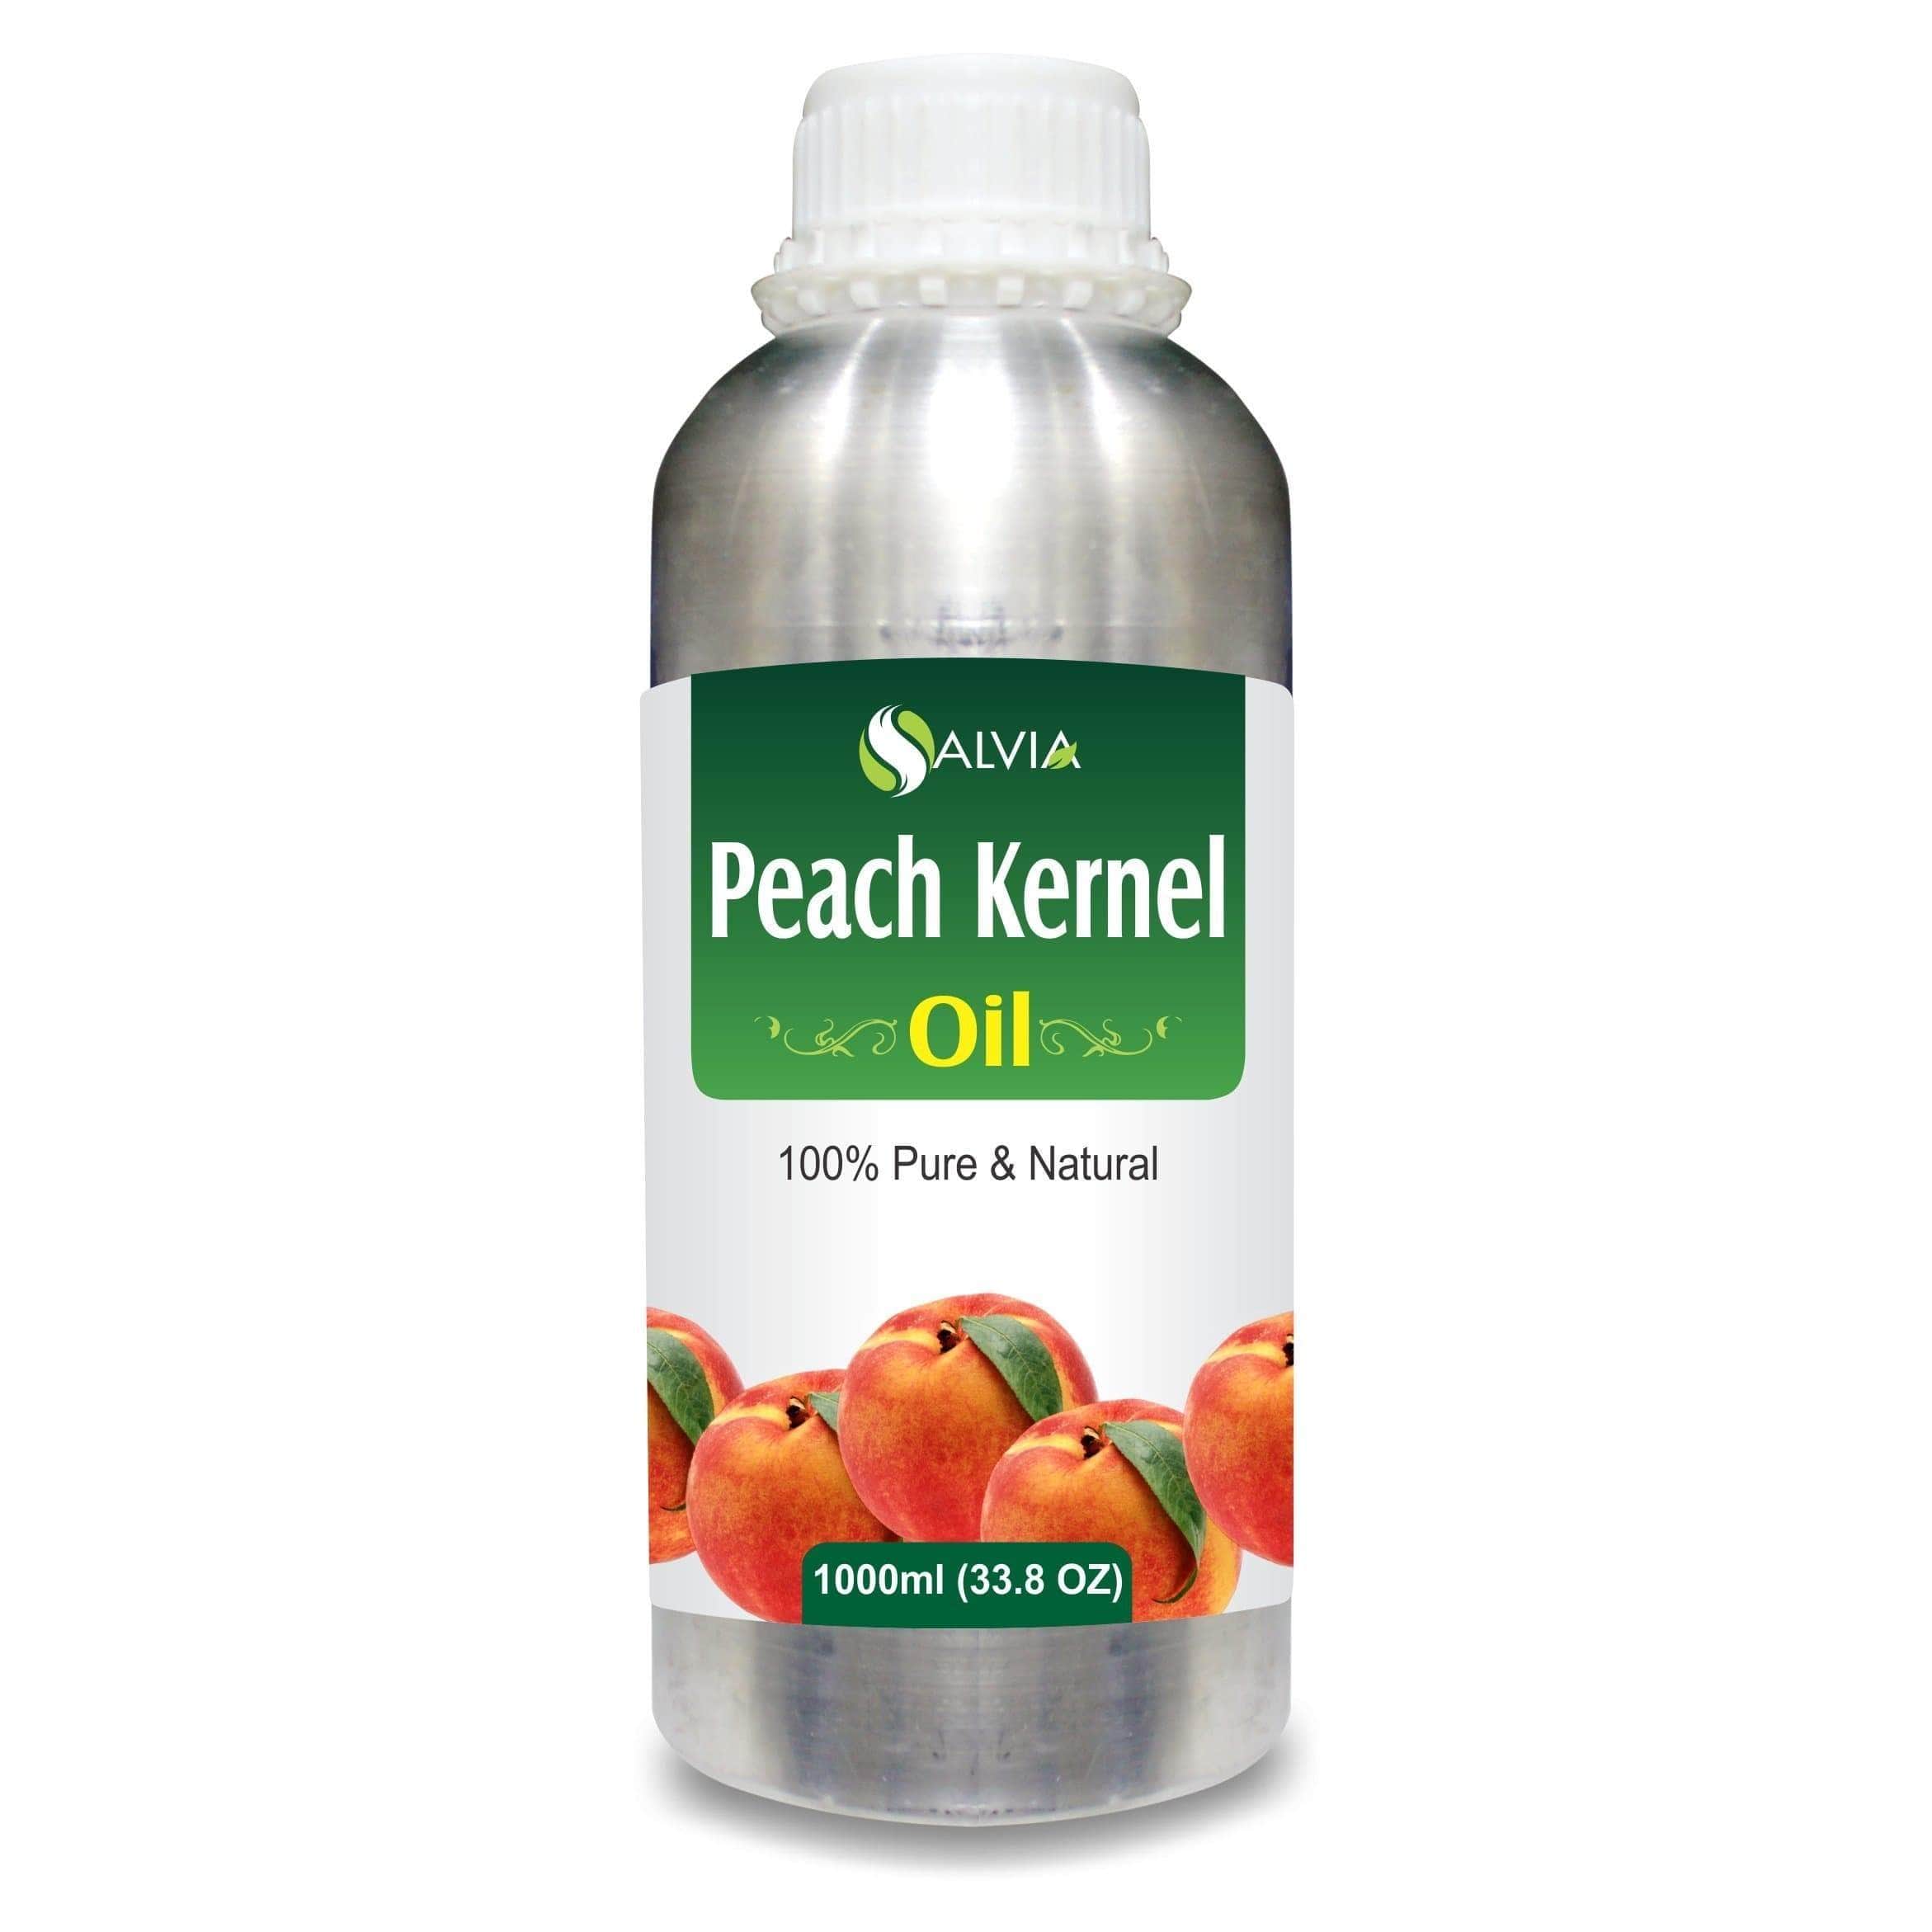 peach kernel uses